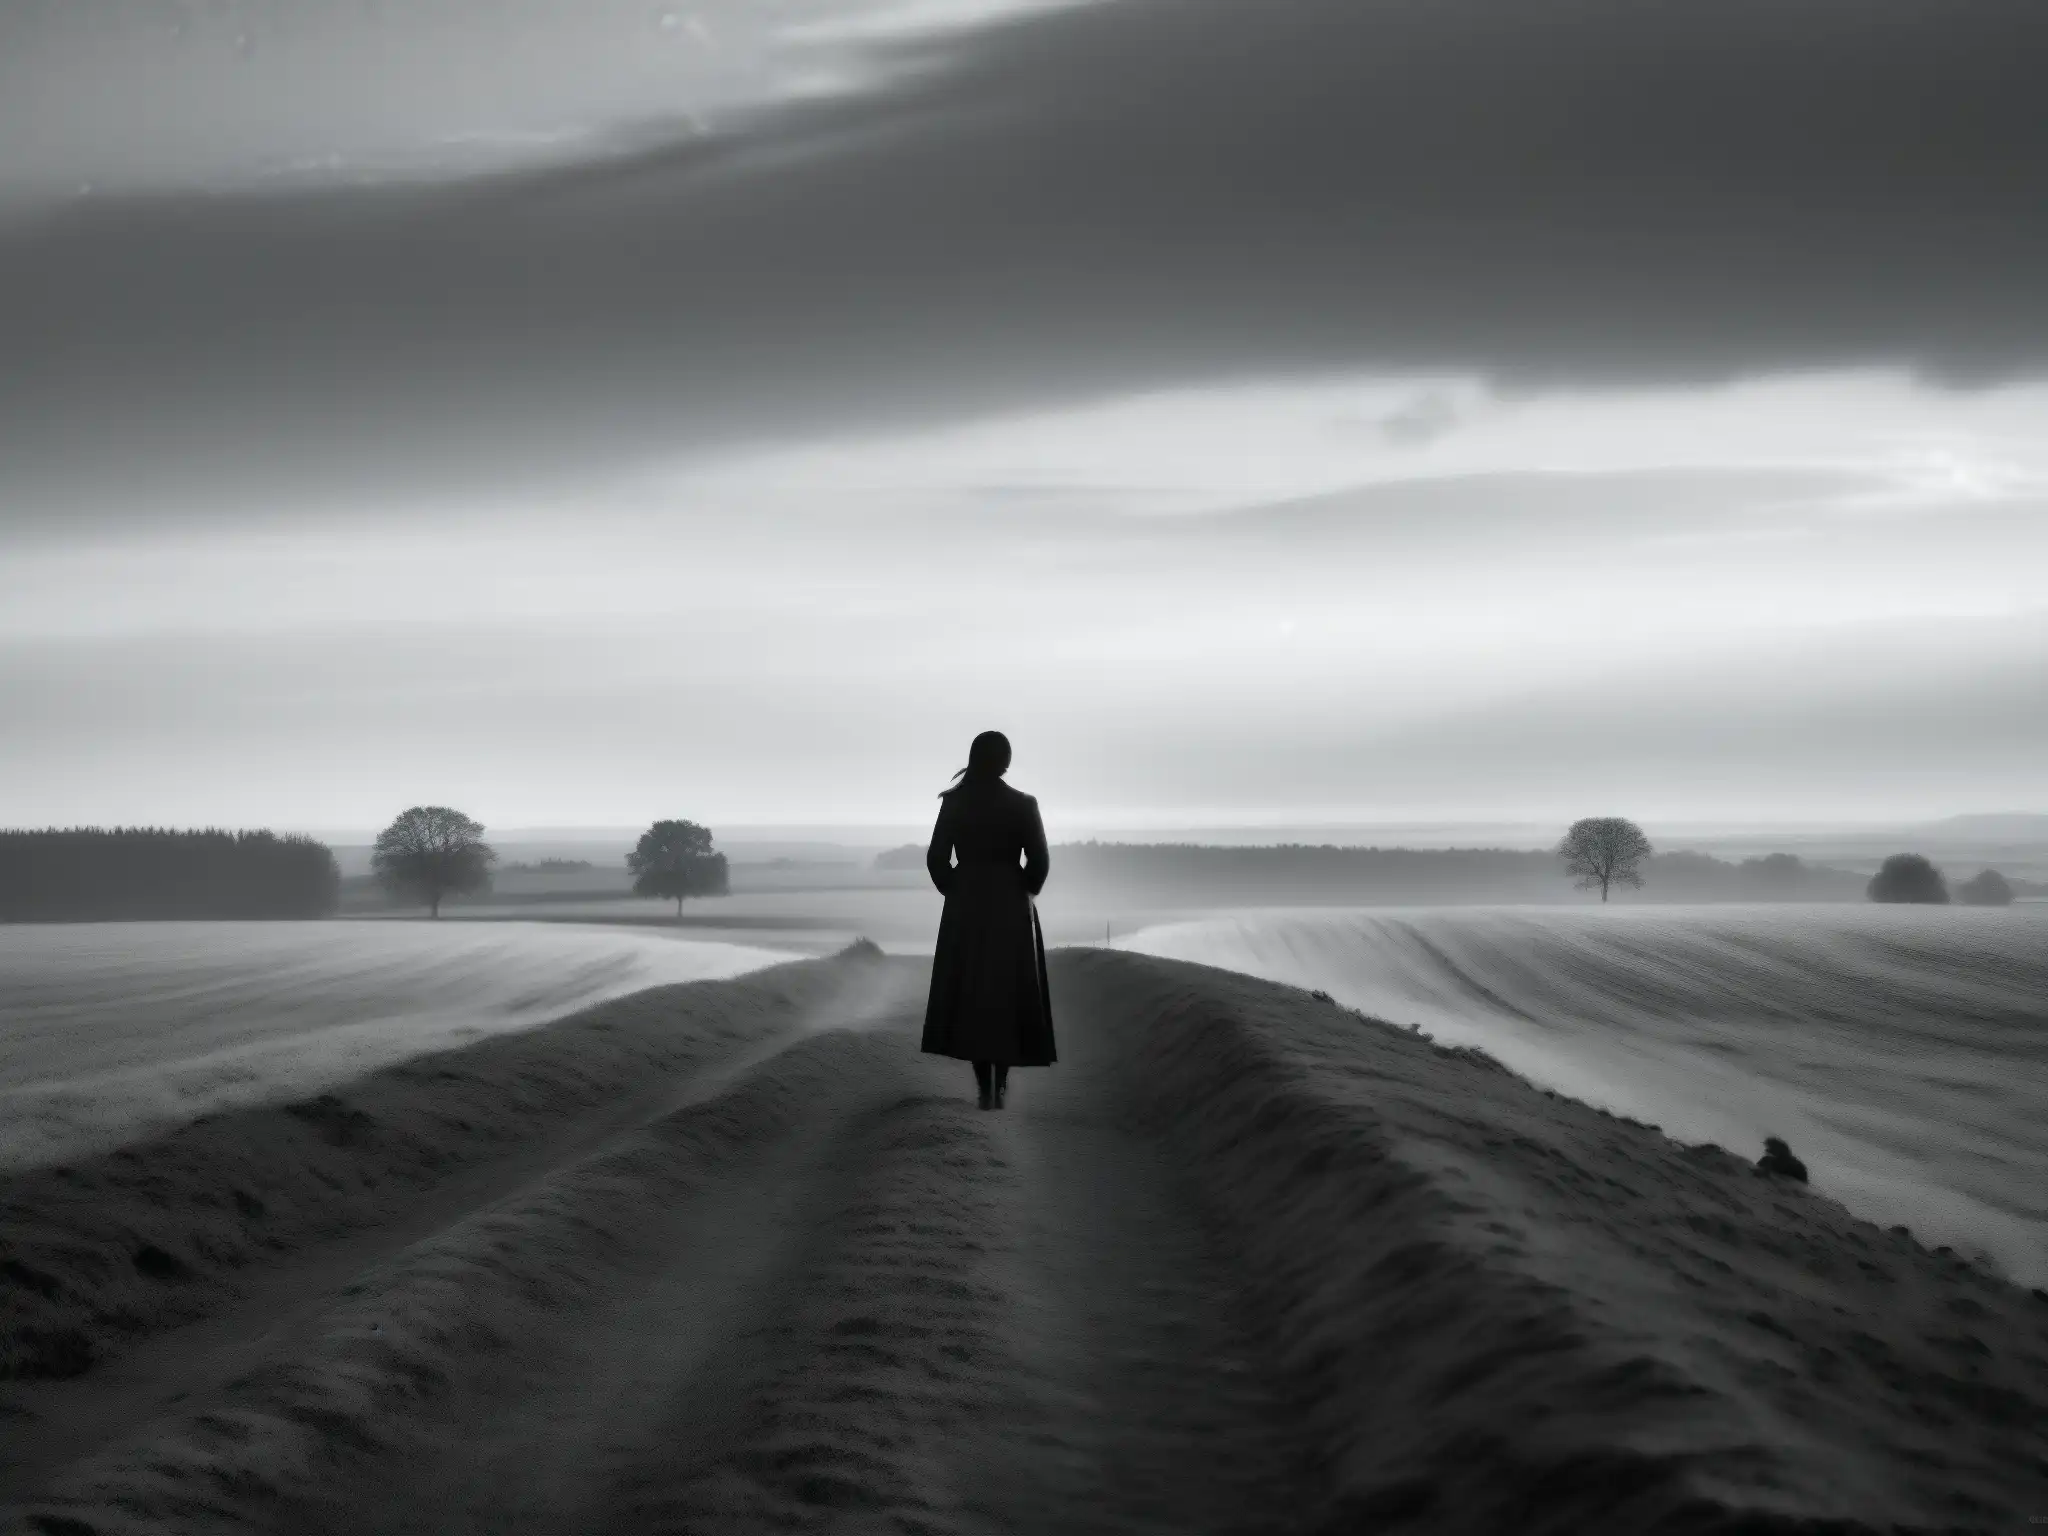 Una mujer solitaria contempla el castigo divino en un paisaje desolado